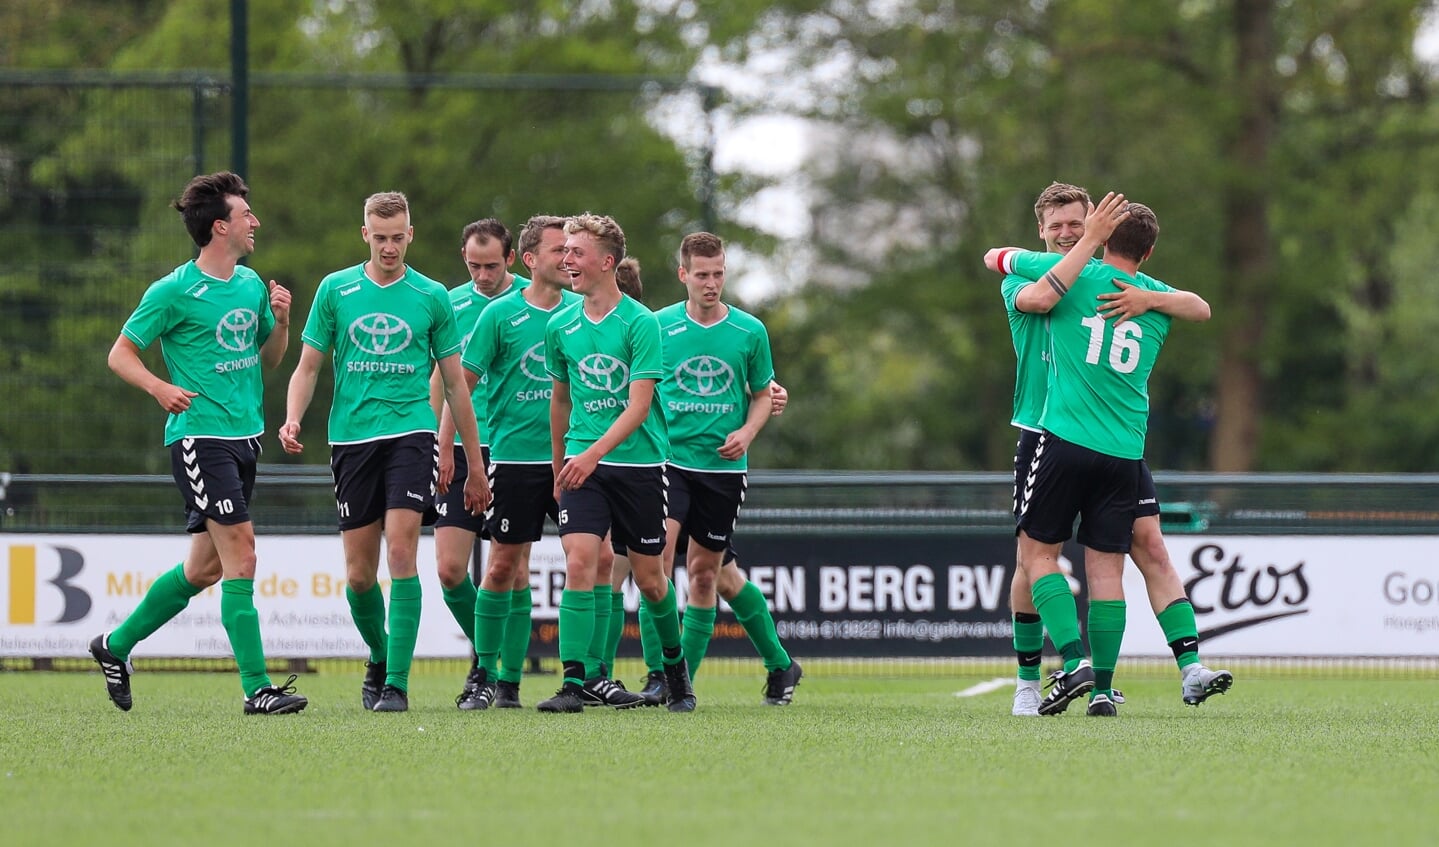 • Peursum - SV Noordeloos (2-1).